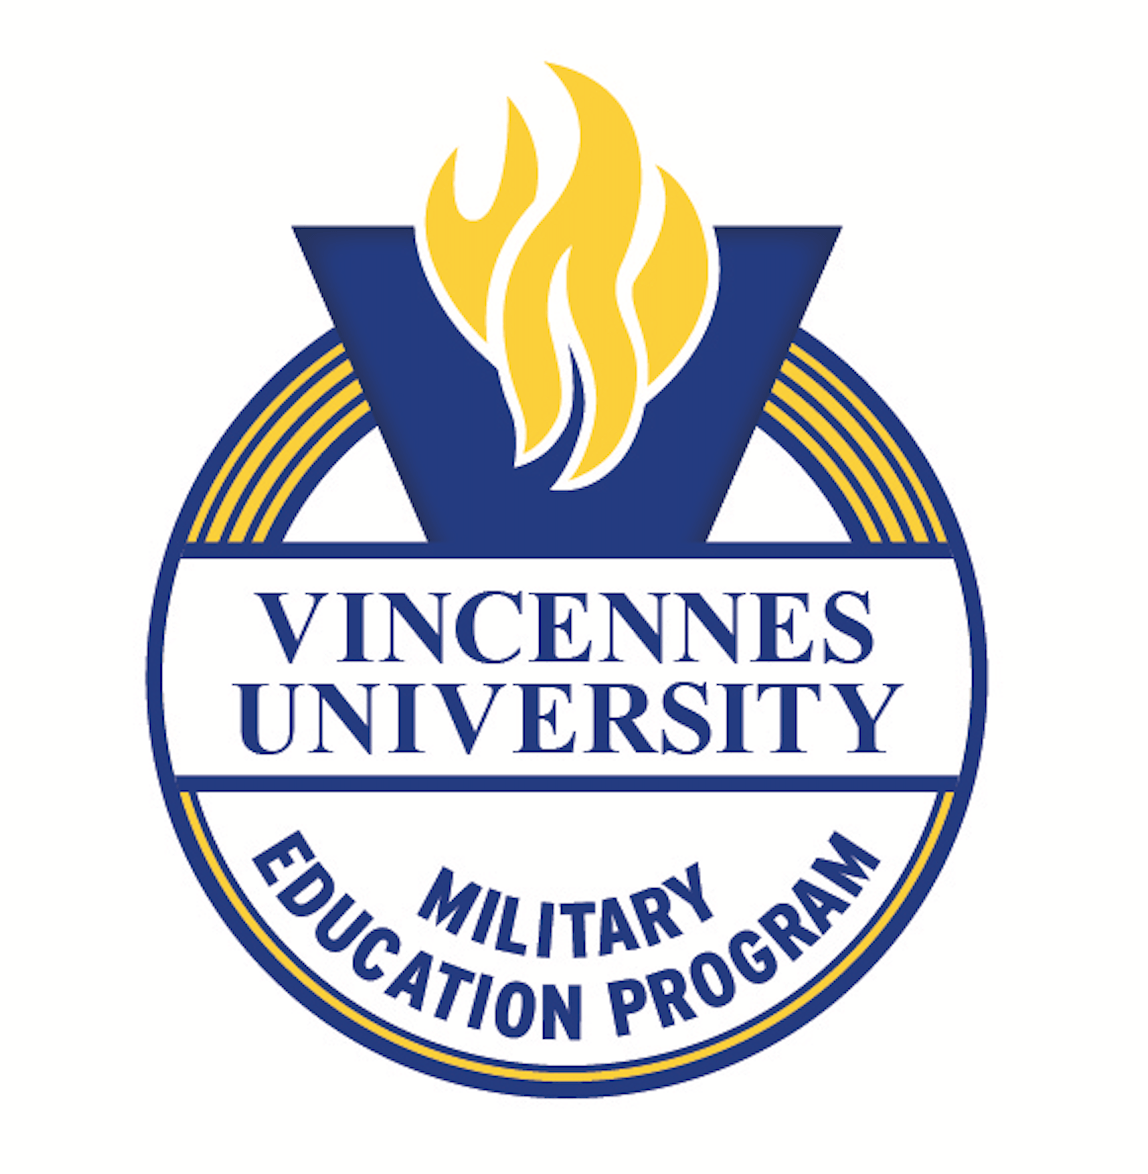 Vincennes Logo - Site Locations - Military Education - Vincennes University